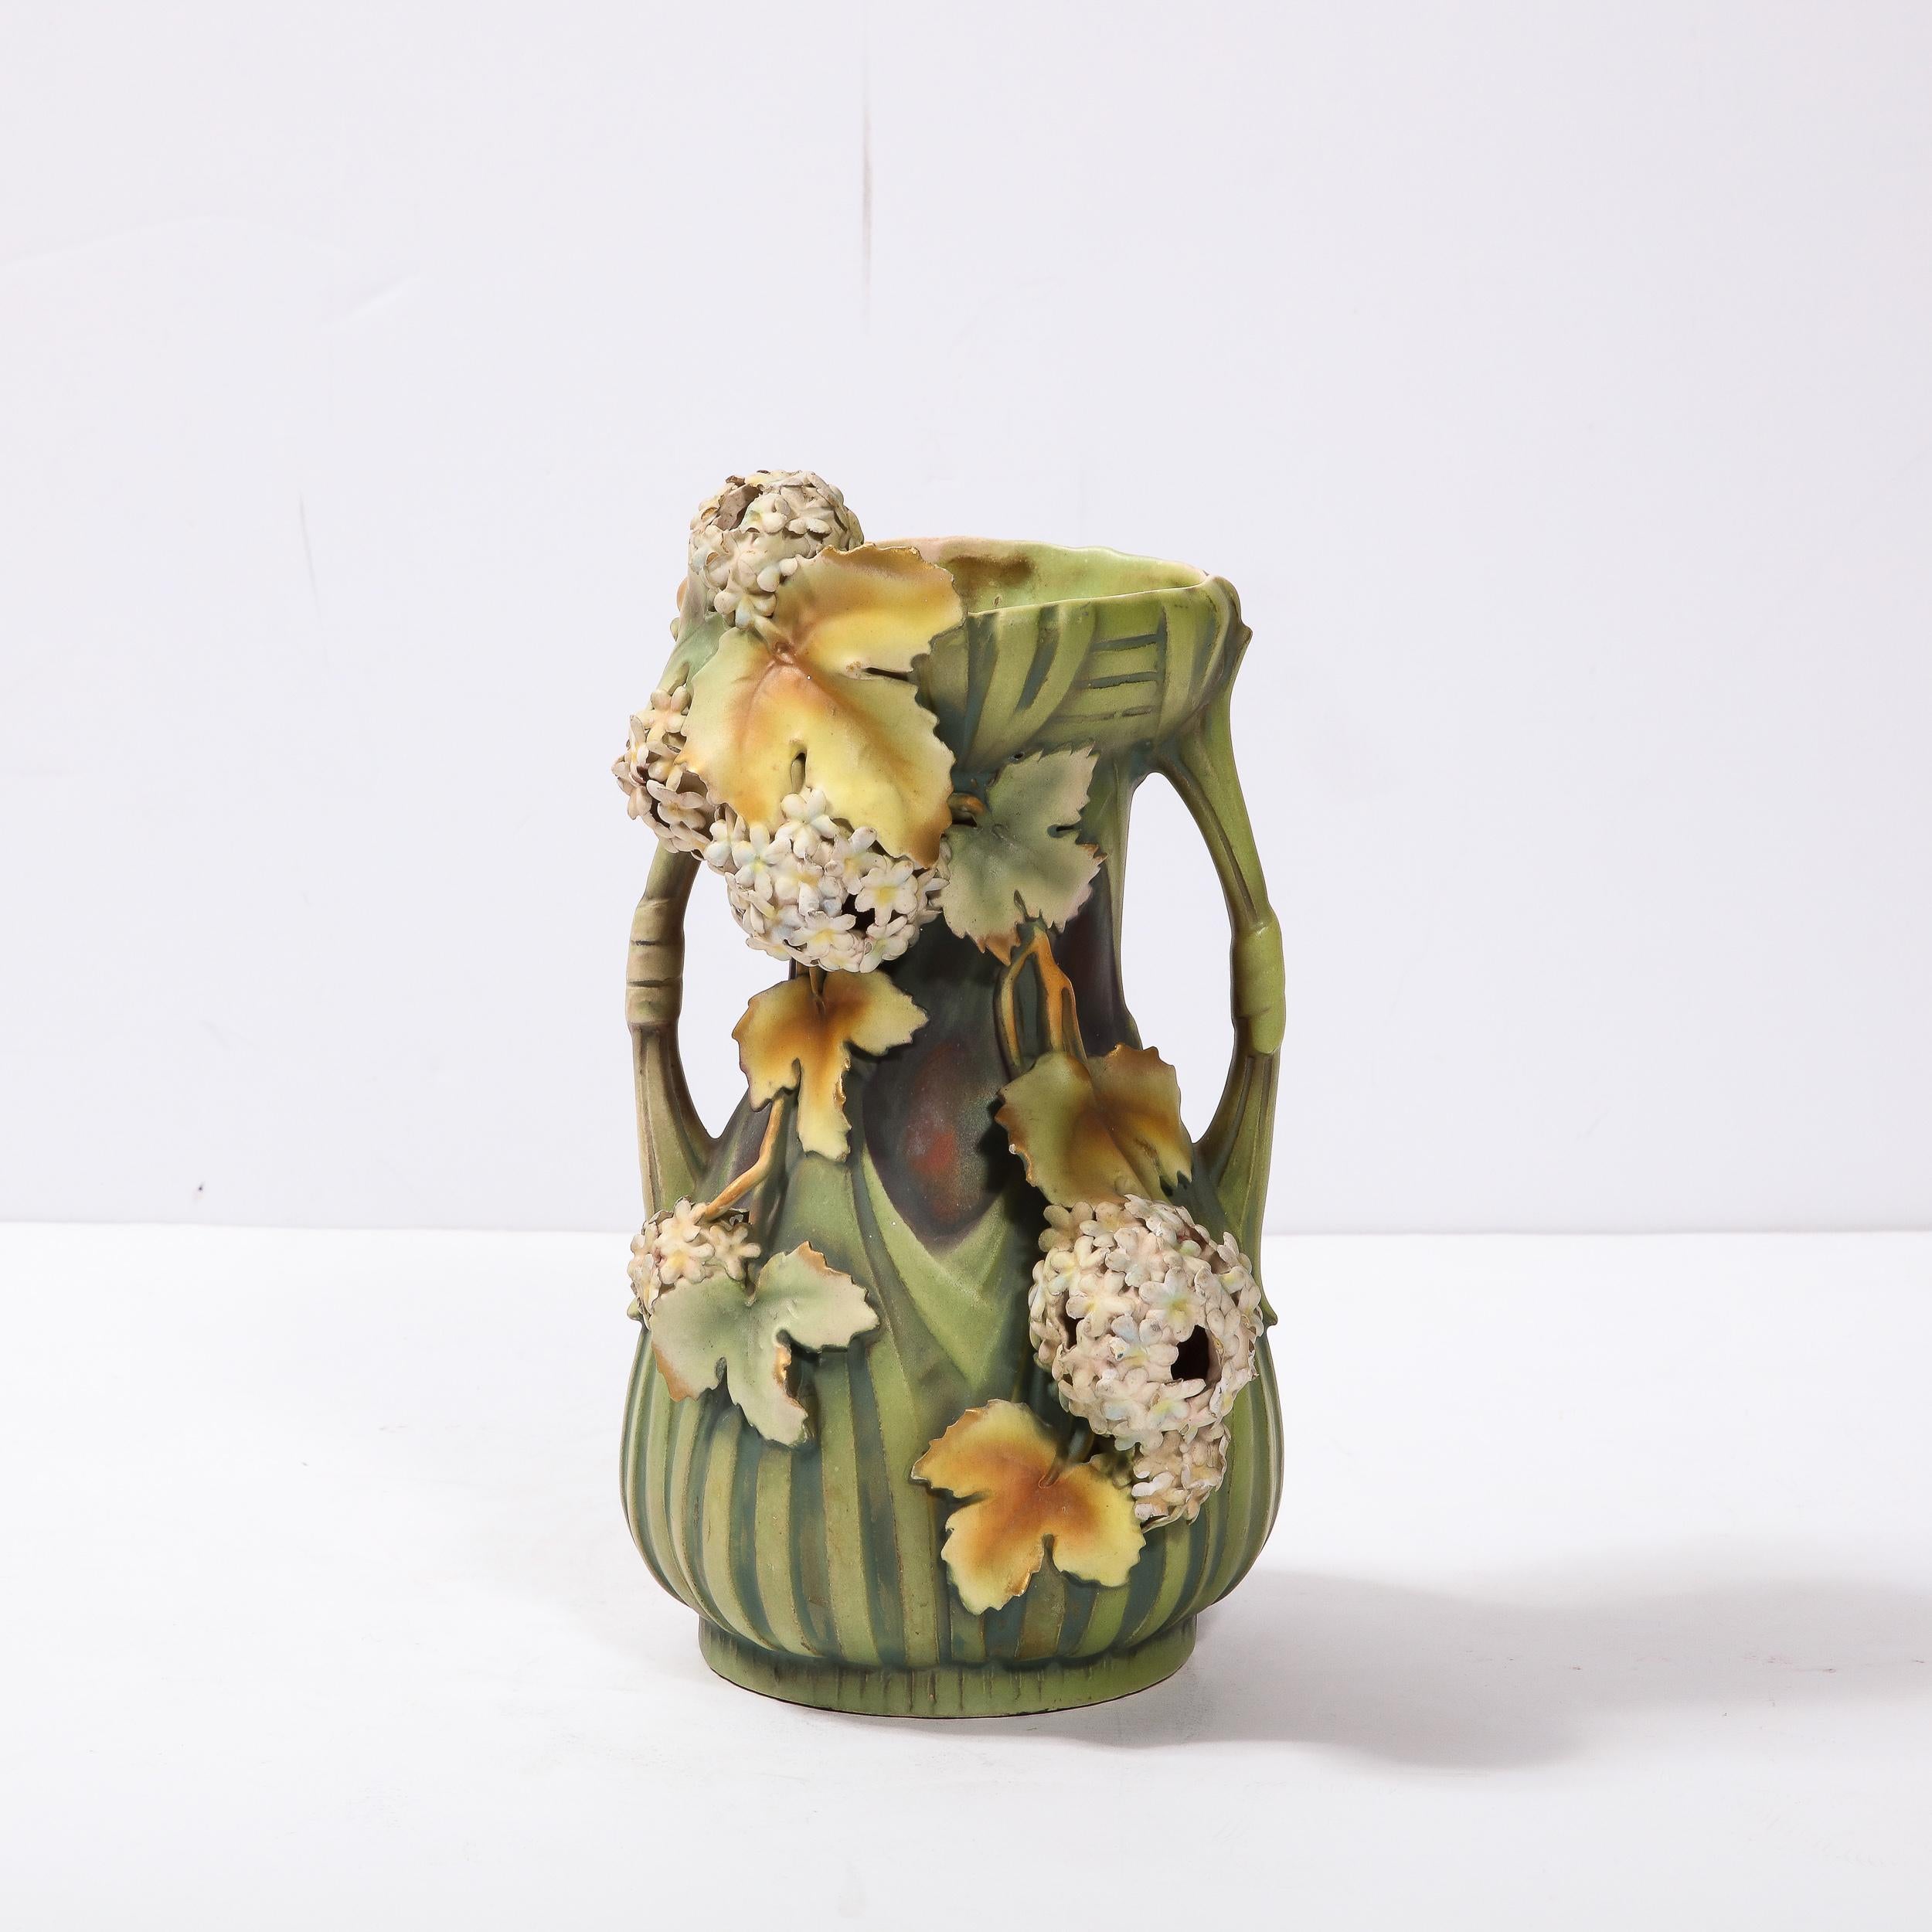 Cet exceptionnel vase Art nouveau en céramique a été créé par l'estimé potier autrichien Robert Hanke vers 1900. Il présente un corps cylindrique avec une section médiane cintrée et des supports cylindriques ouverts sculpturaux en forme d'arc qui